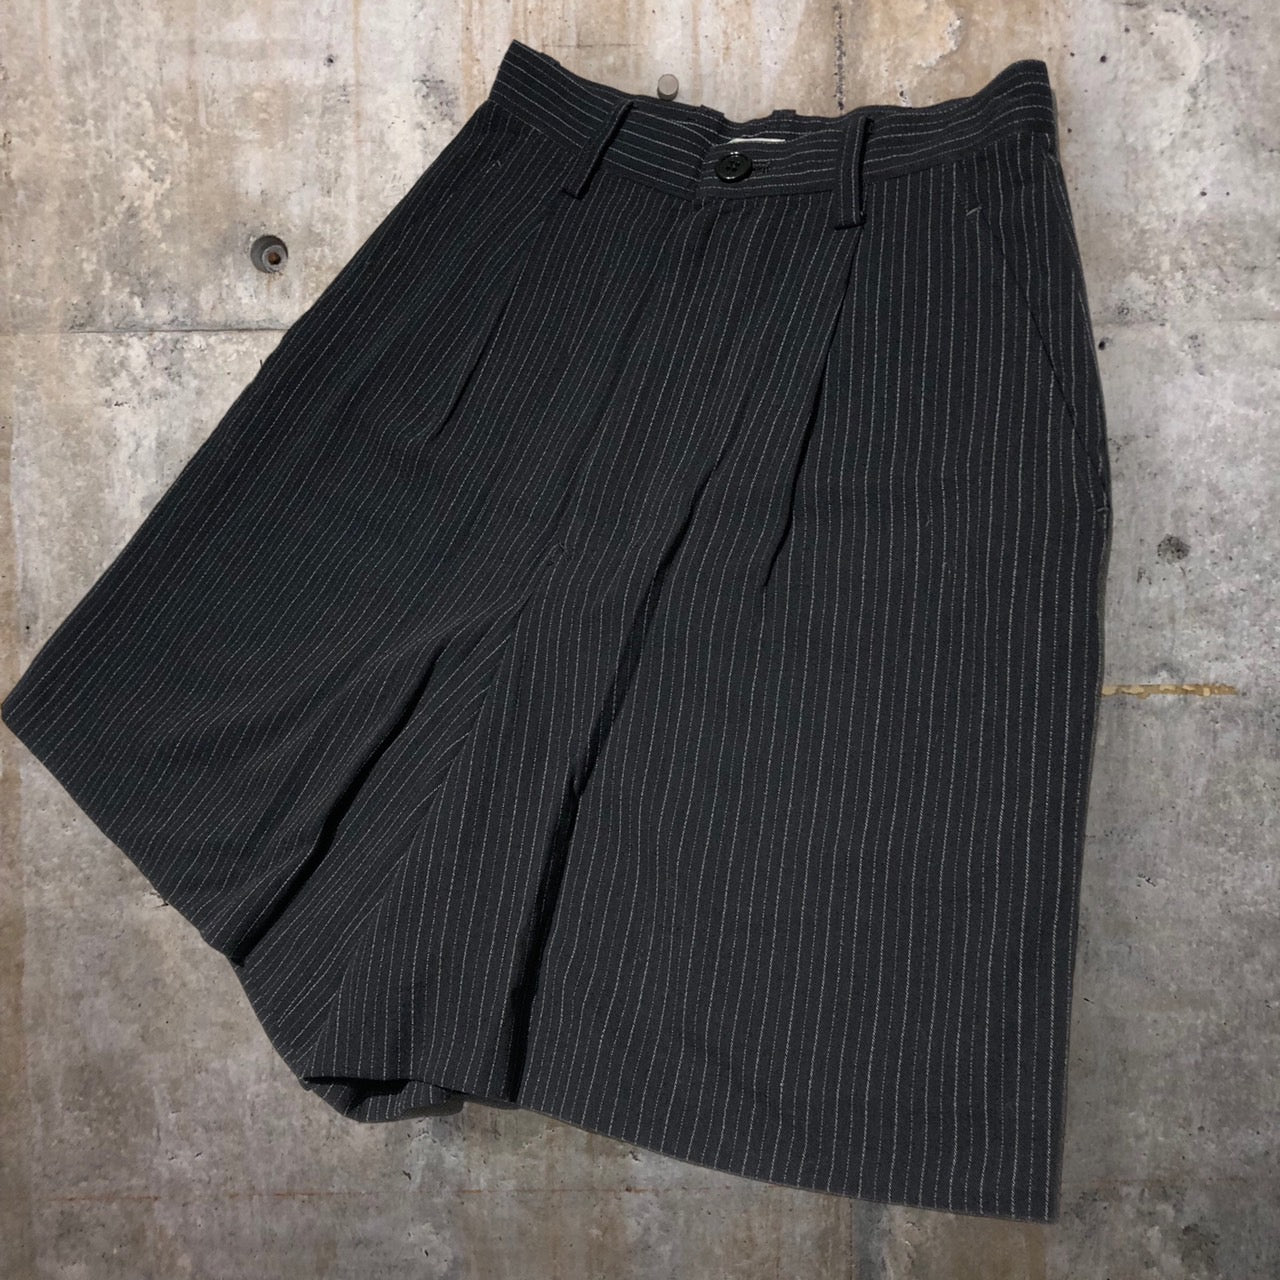 i.s. ISSEY MIYAKE(アイエス イッセイミヤケ) 90's 1tac stripe half pants/ストライプハーフパンツ IS41-FF041 M ブラック